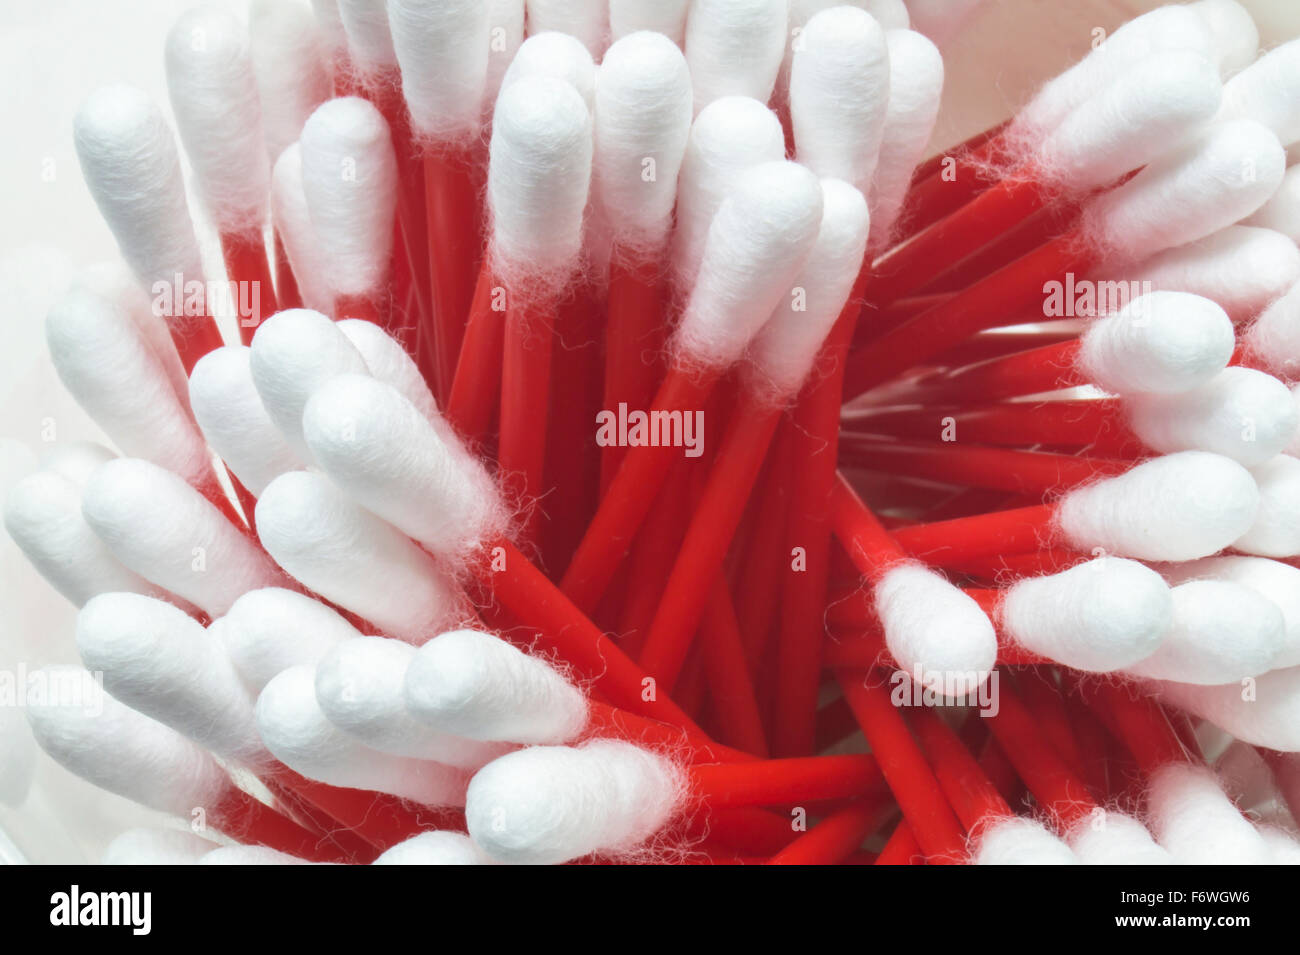 Bâtonnets stériles médicaux rouge avec la laine de coton blanc close-up Banque D'Images